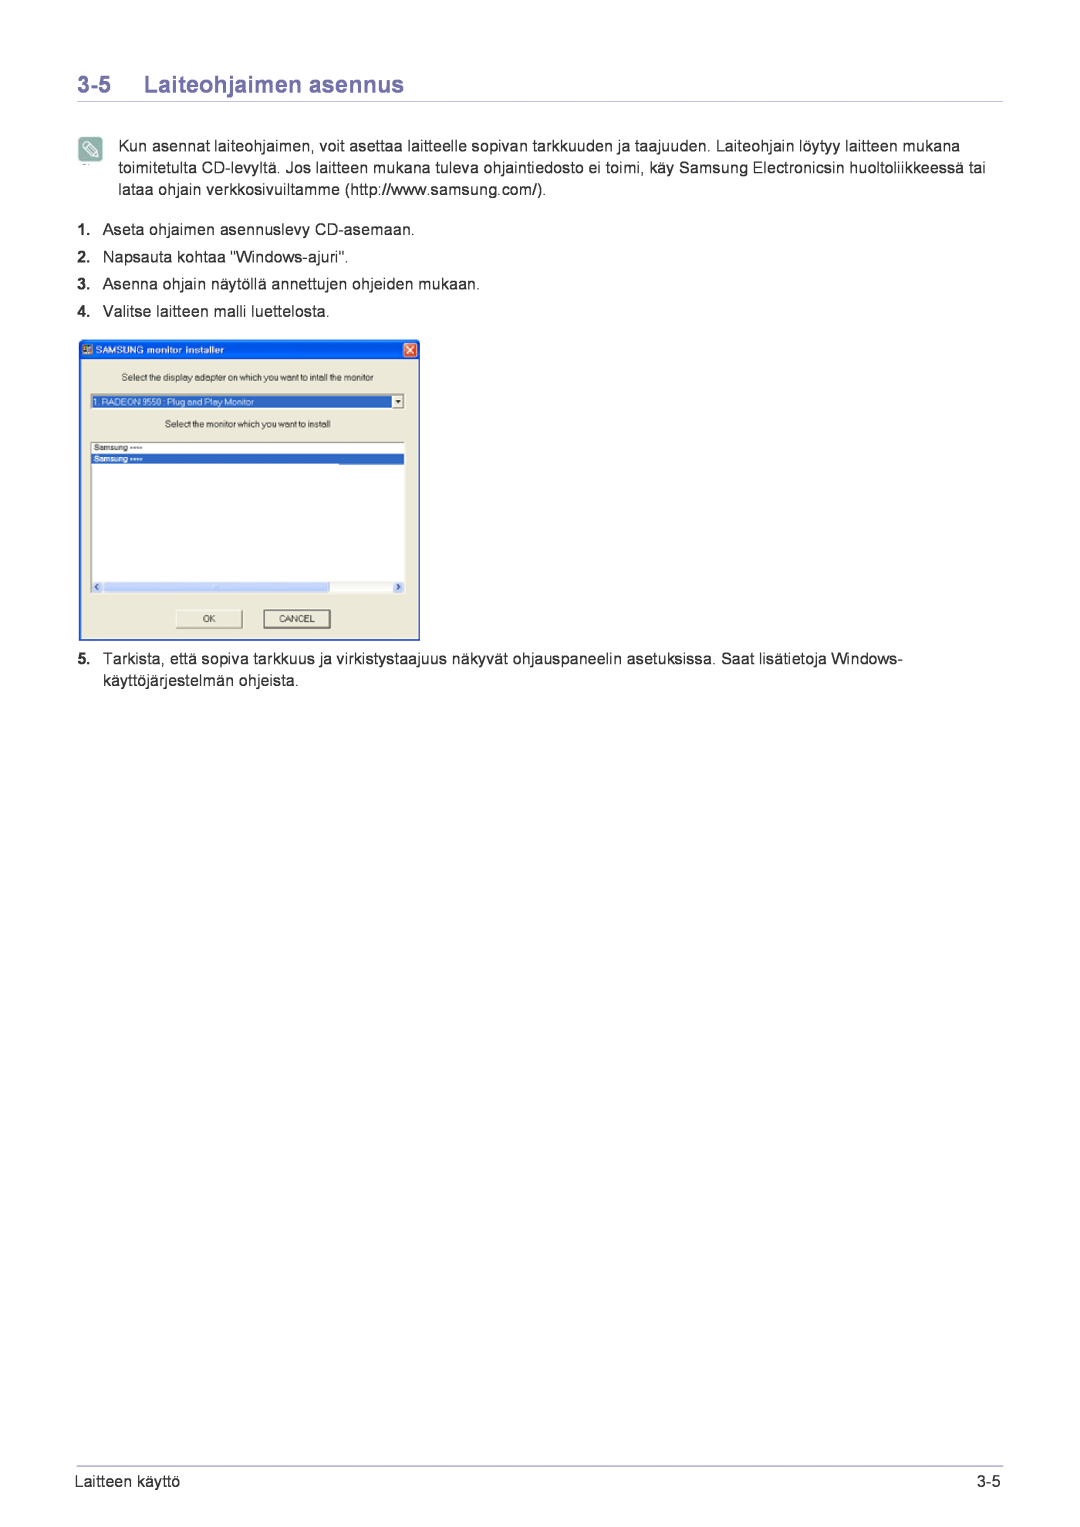 Samsung LF22NPBHBNP/EN manual Laiteohjaimen asennus, Aseta ohjaimen asennuslevy CD-asemaan, Napsauta kohtaa Windows-ajuri 